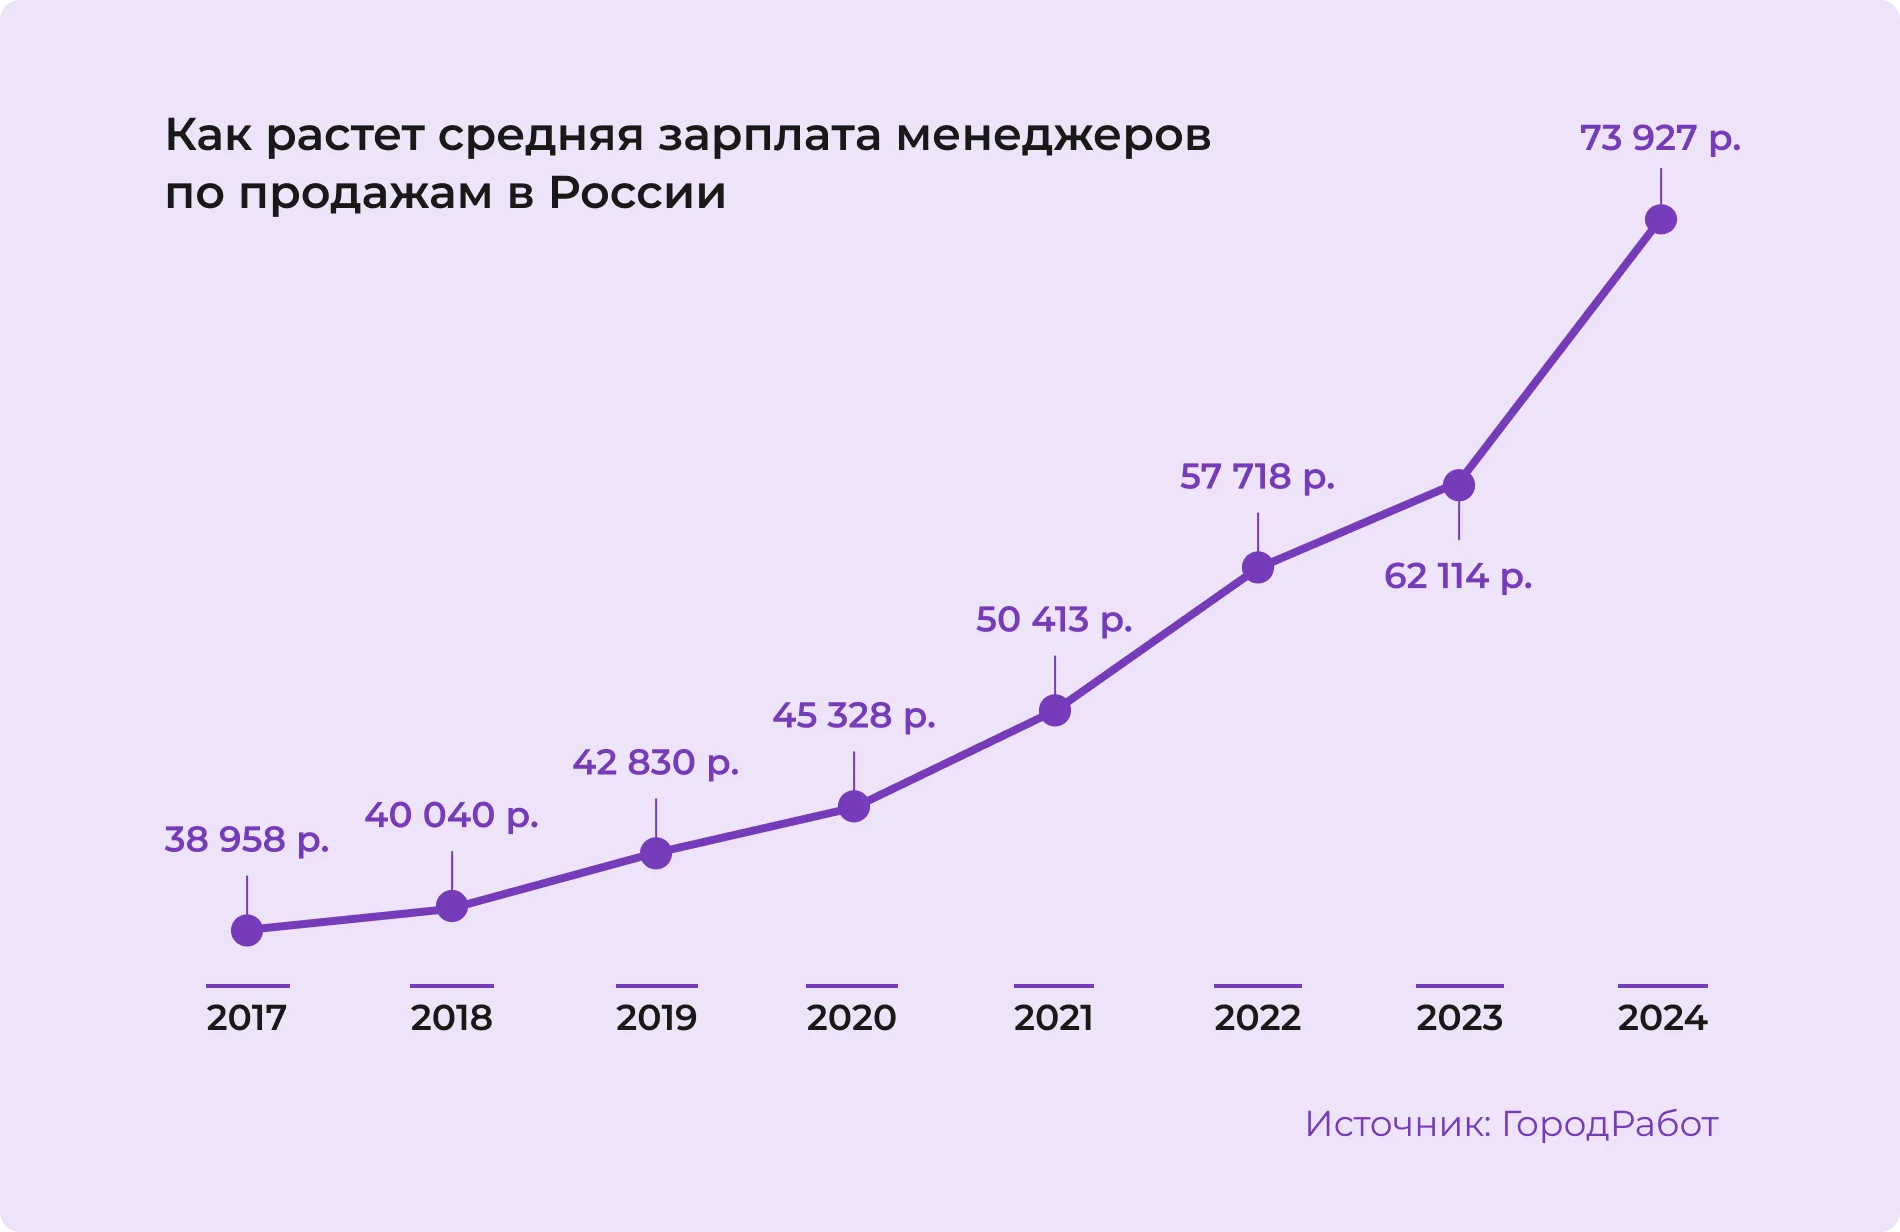 Рост средней зарплаты менеджеров по продажам в России